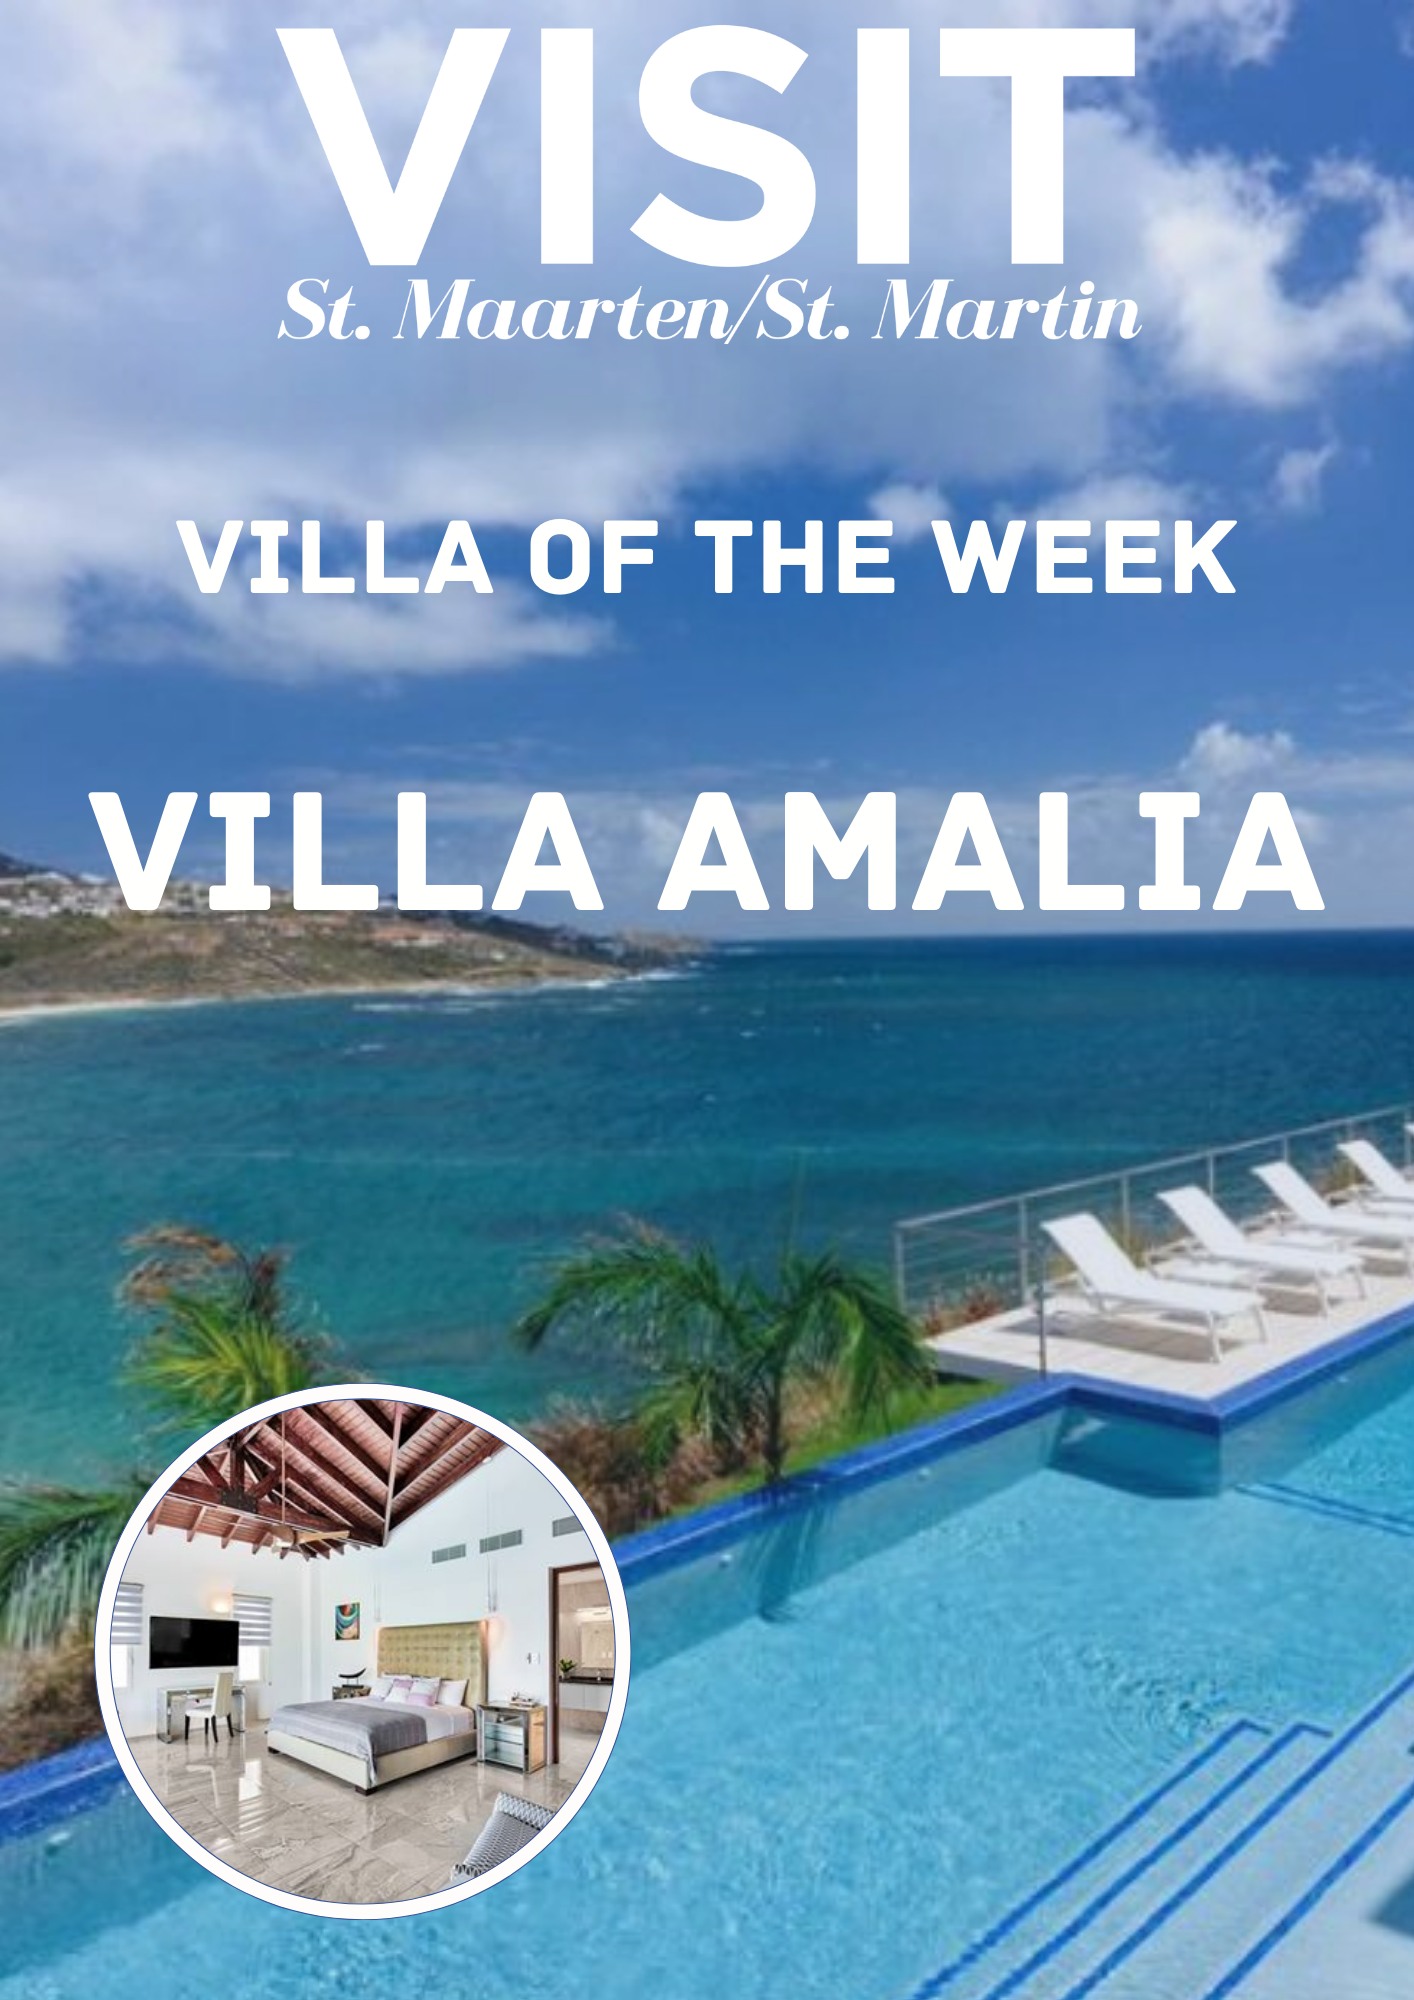 villa of the week, Villa Amalia, Saint Martyn, St Maarten, St Martain, Maho Beach